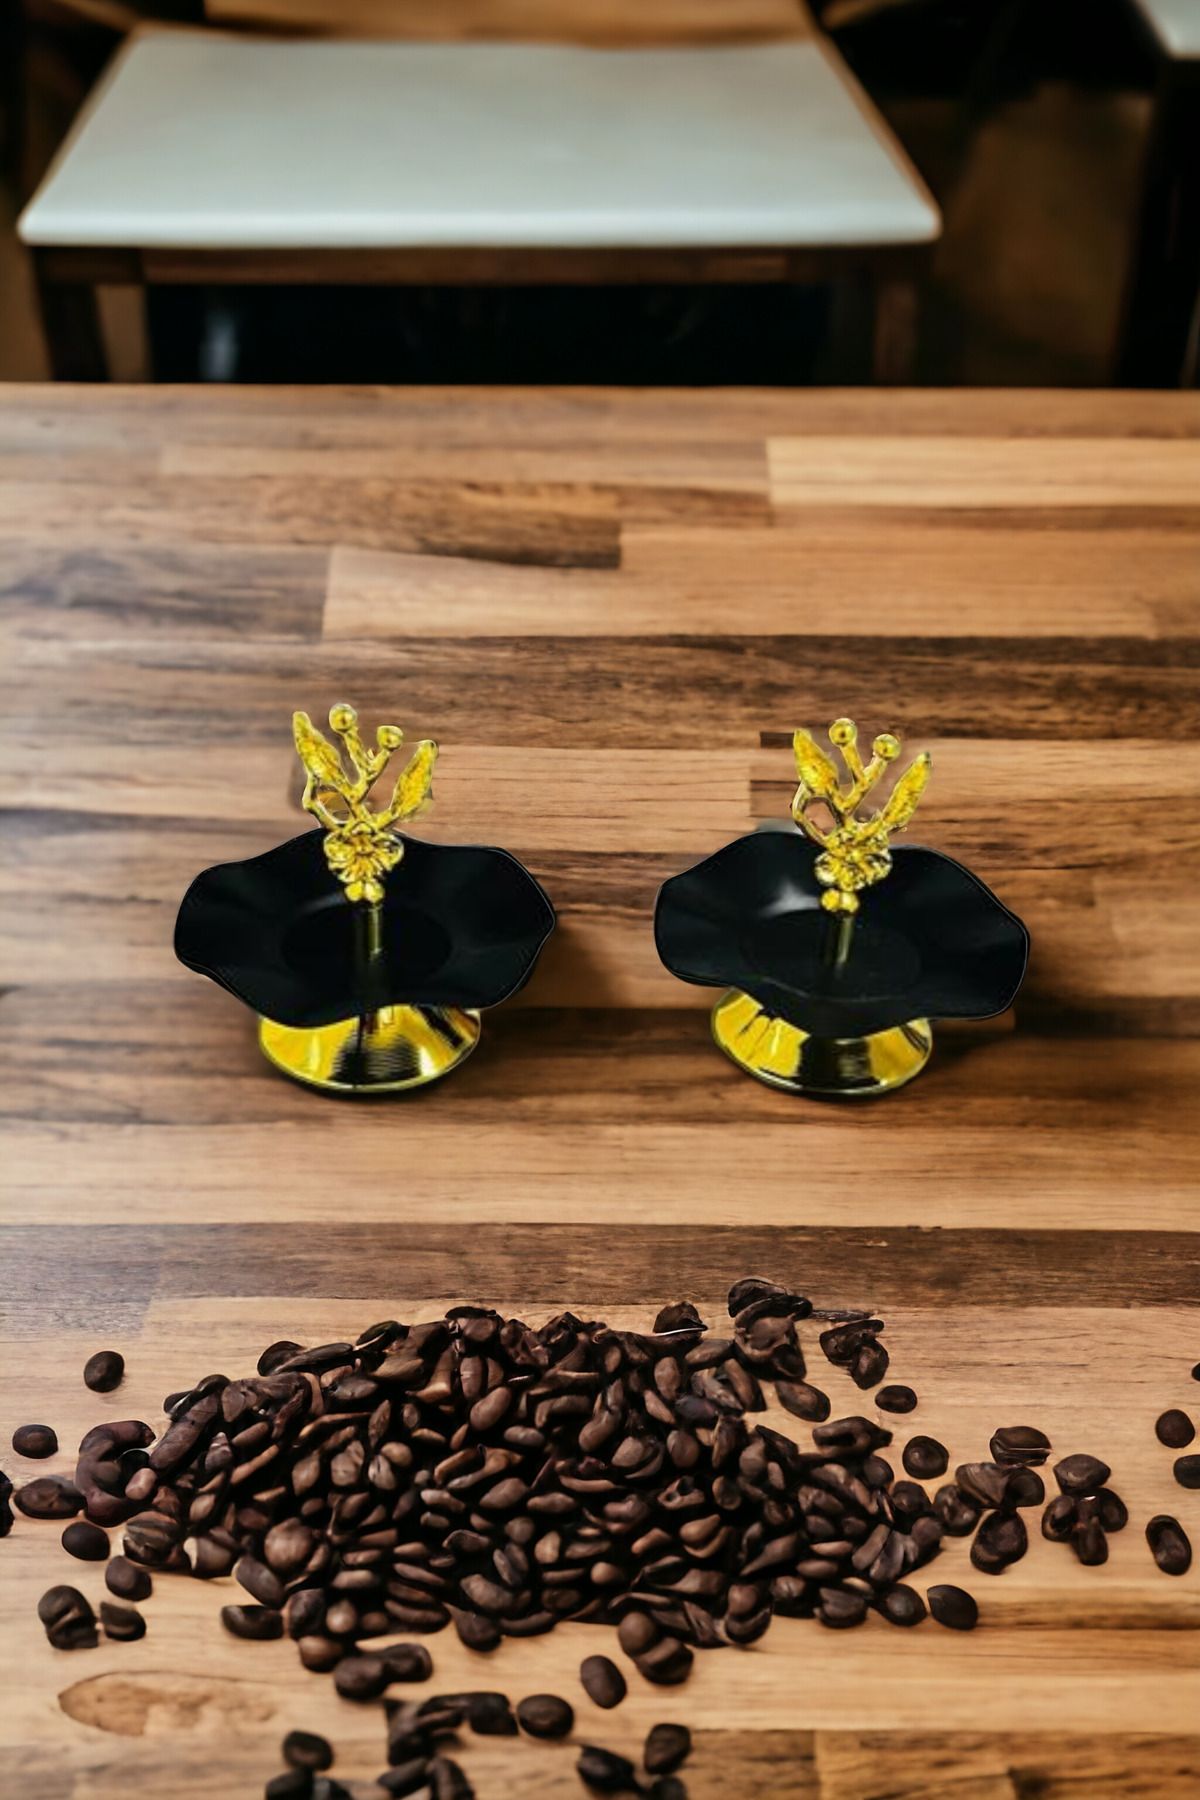 Saccura Decor 2li Siyah&Gold Şekerlik Seti, Kahve Yanı Tek Katlı Sunumluk, Lokumluk Seti